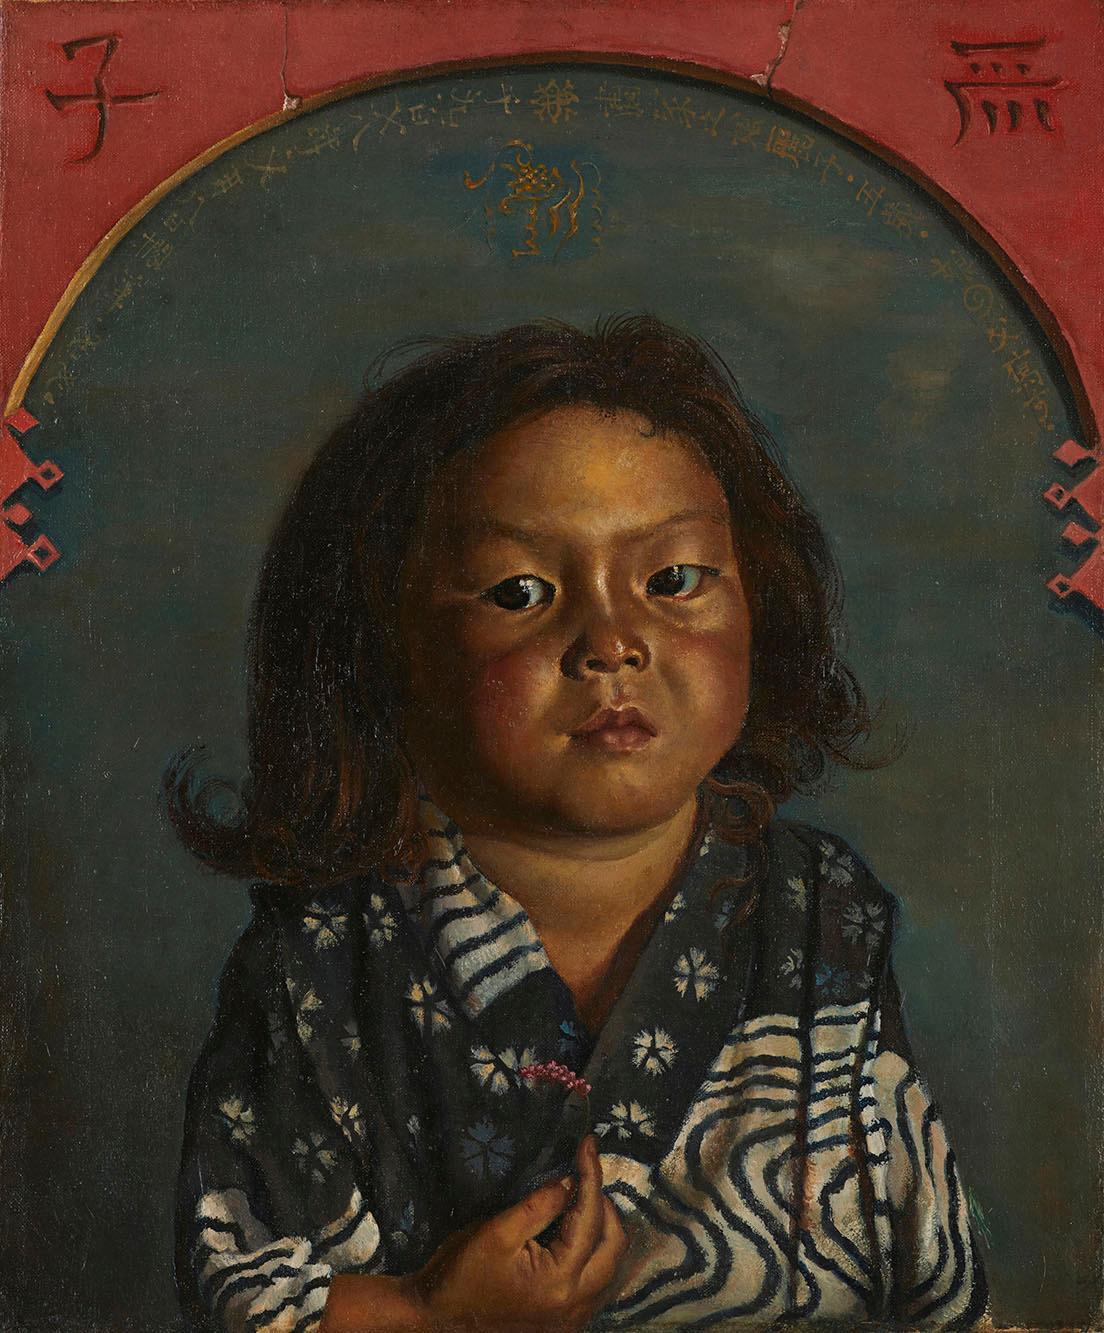 岸田劉生《麗子肖像（麗子五歳之像）》1918年、東京国立近代美術館蔵。岸田劉生が油絵で初めて描いた麗子像。額縁に飾られた麗子の肖像画を描いた、だまし絵のスタイルをとっている。